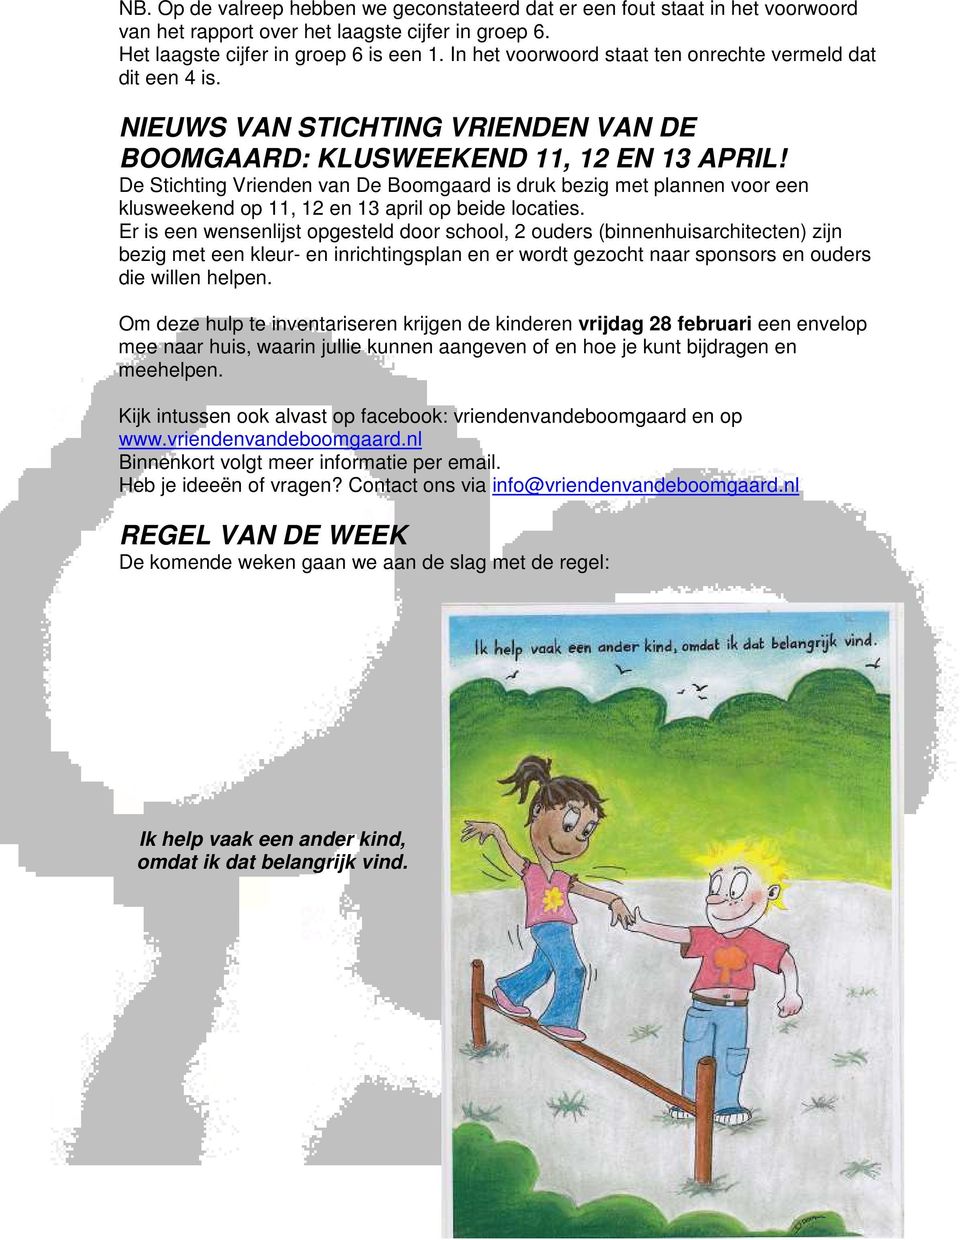 De Stichting Vrienden van De Boomgaard is druk bezig met plannen voor een klusweekend op 11, 12 en 13 april op beide locaties.